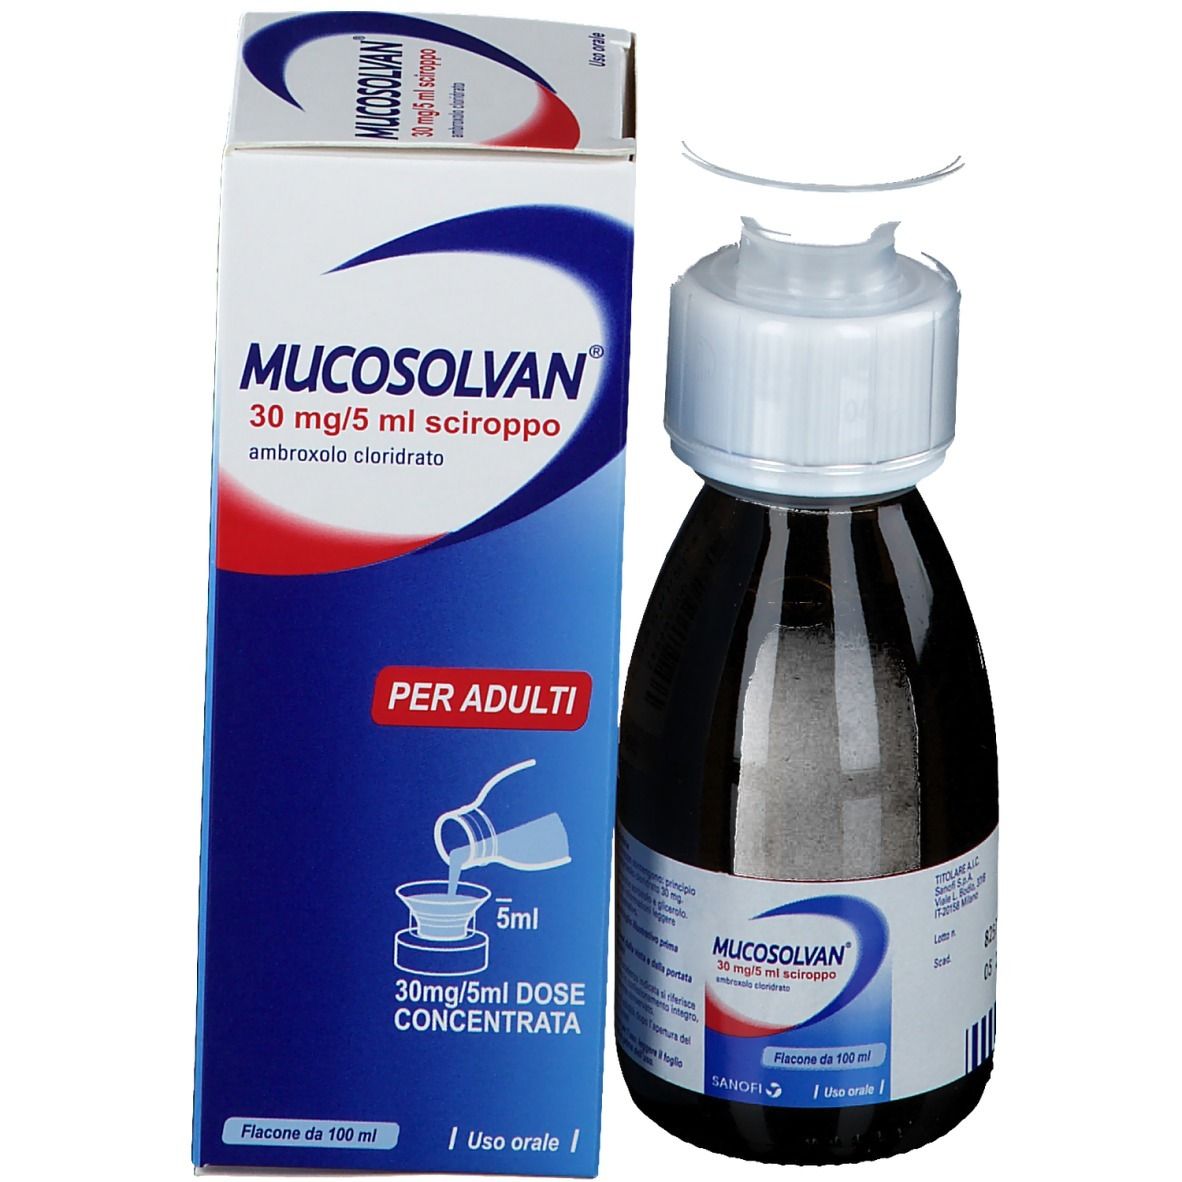 MUCOSOLVAN 30 mg/5 ml Sciroppo